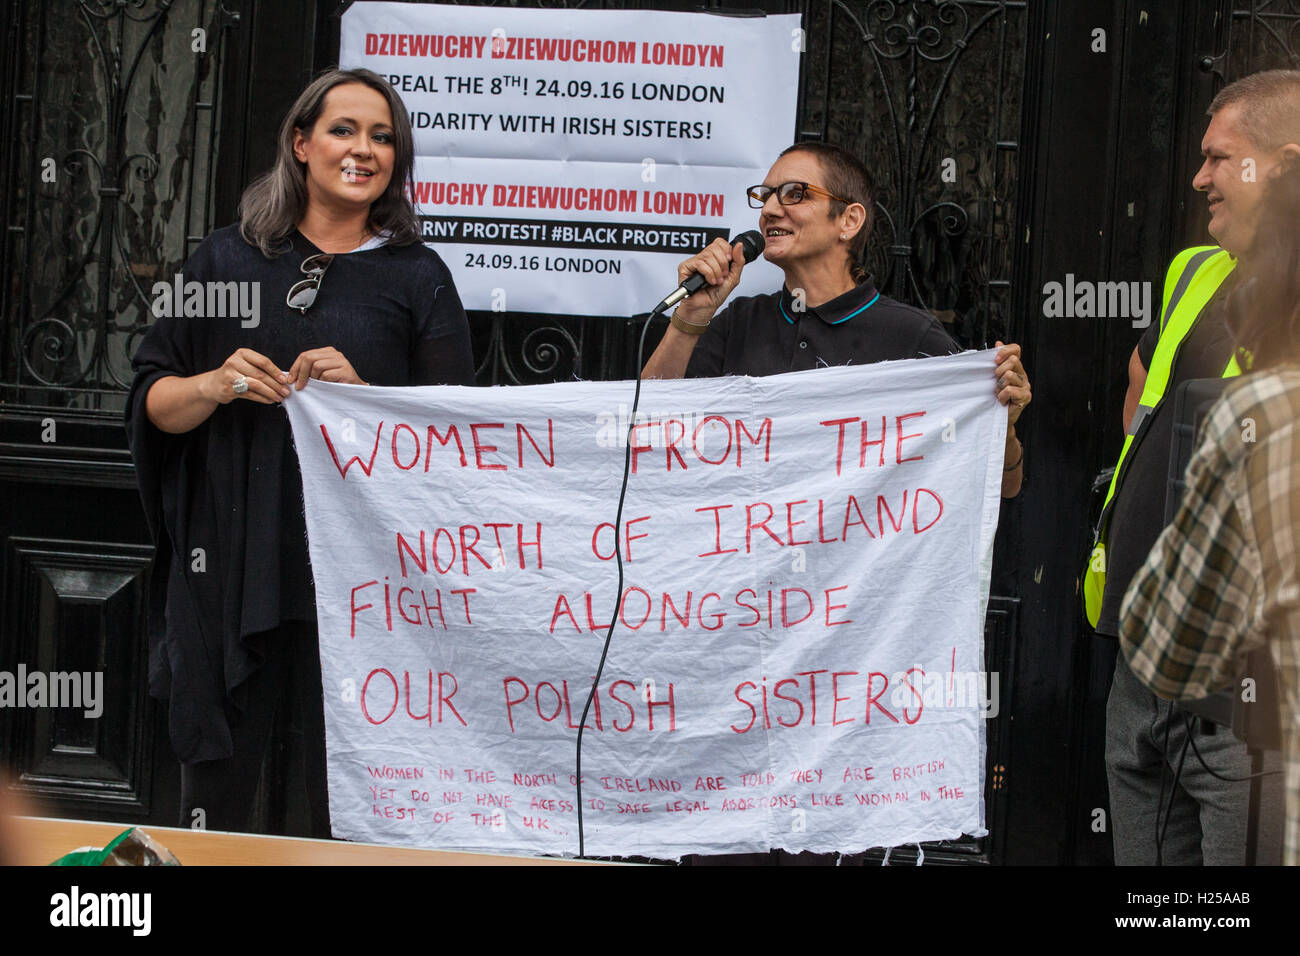 Londres, Reino Unido. 24 de septiembre de 2016. Un orador de Irlanda del Norte demuestra solidaridad con grupos de mujeres polacas y simpatizantes se reunieron fuera de la embajada de Polonia para una de las dos protestas en Londres - el otro tuvo lugar fuera de la embajada irlandesa - coincidiendo con la marcha de la elección en Dublín contra Irlanda la estricta ley del aborto y la derogación de la octava protestas en todo el mundo. Crédito: Mark Kerrison/Alamy Live News Foto de stock